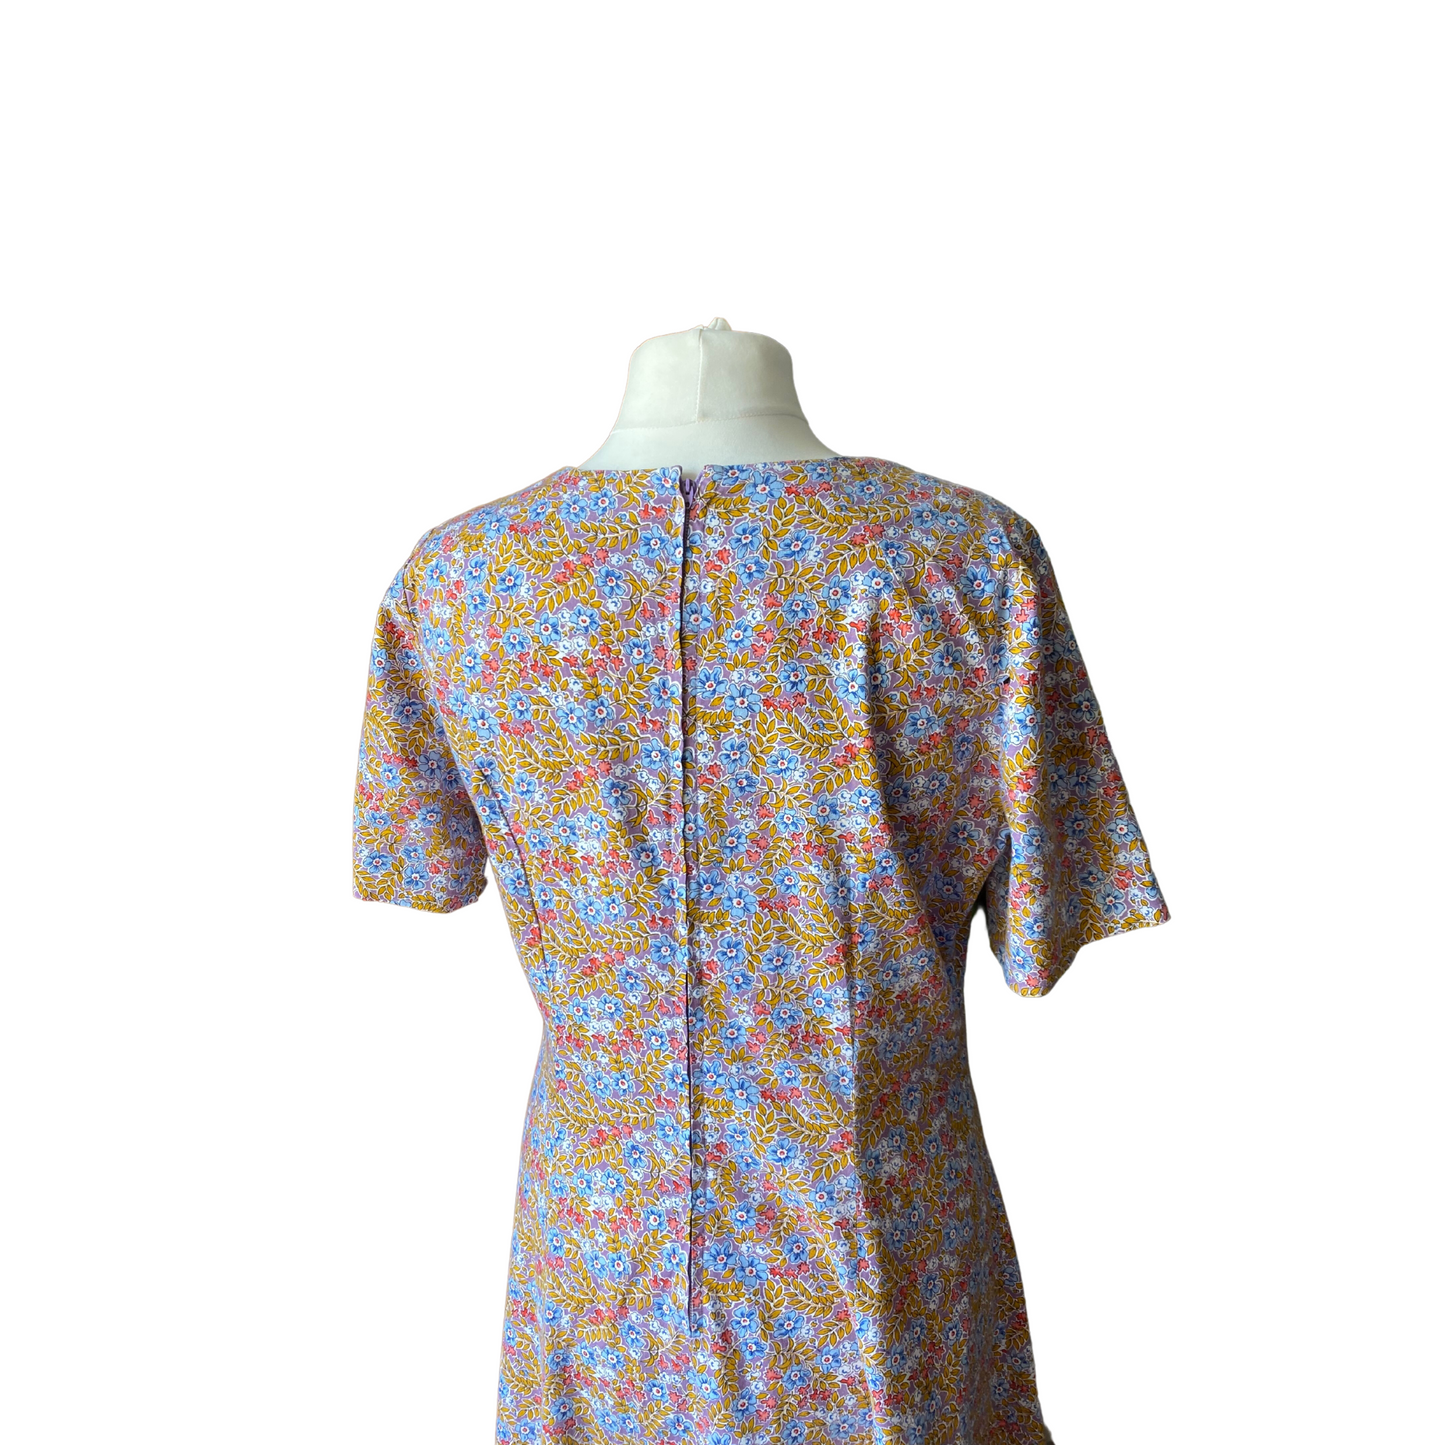 Cotton floral short sleeved vintage Summer dress. Approx UK size 18-20